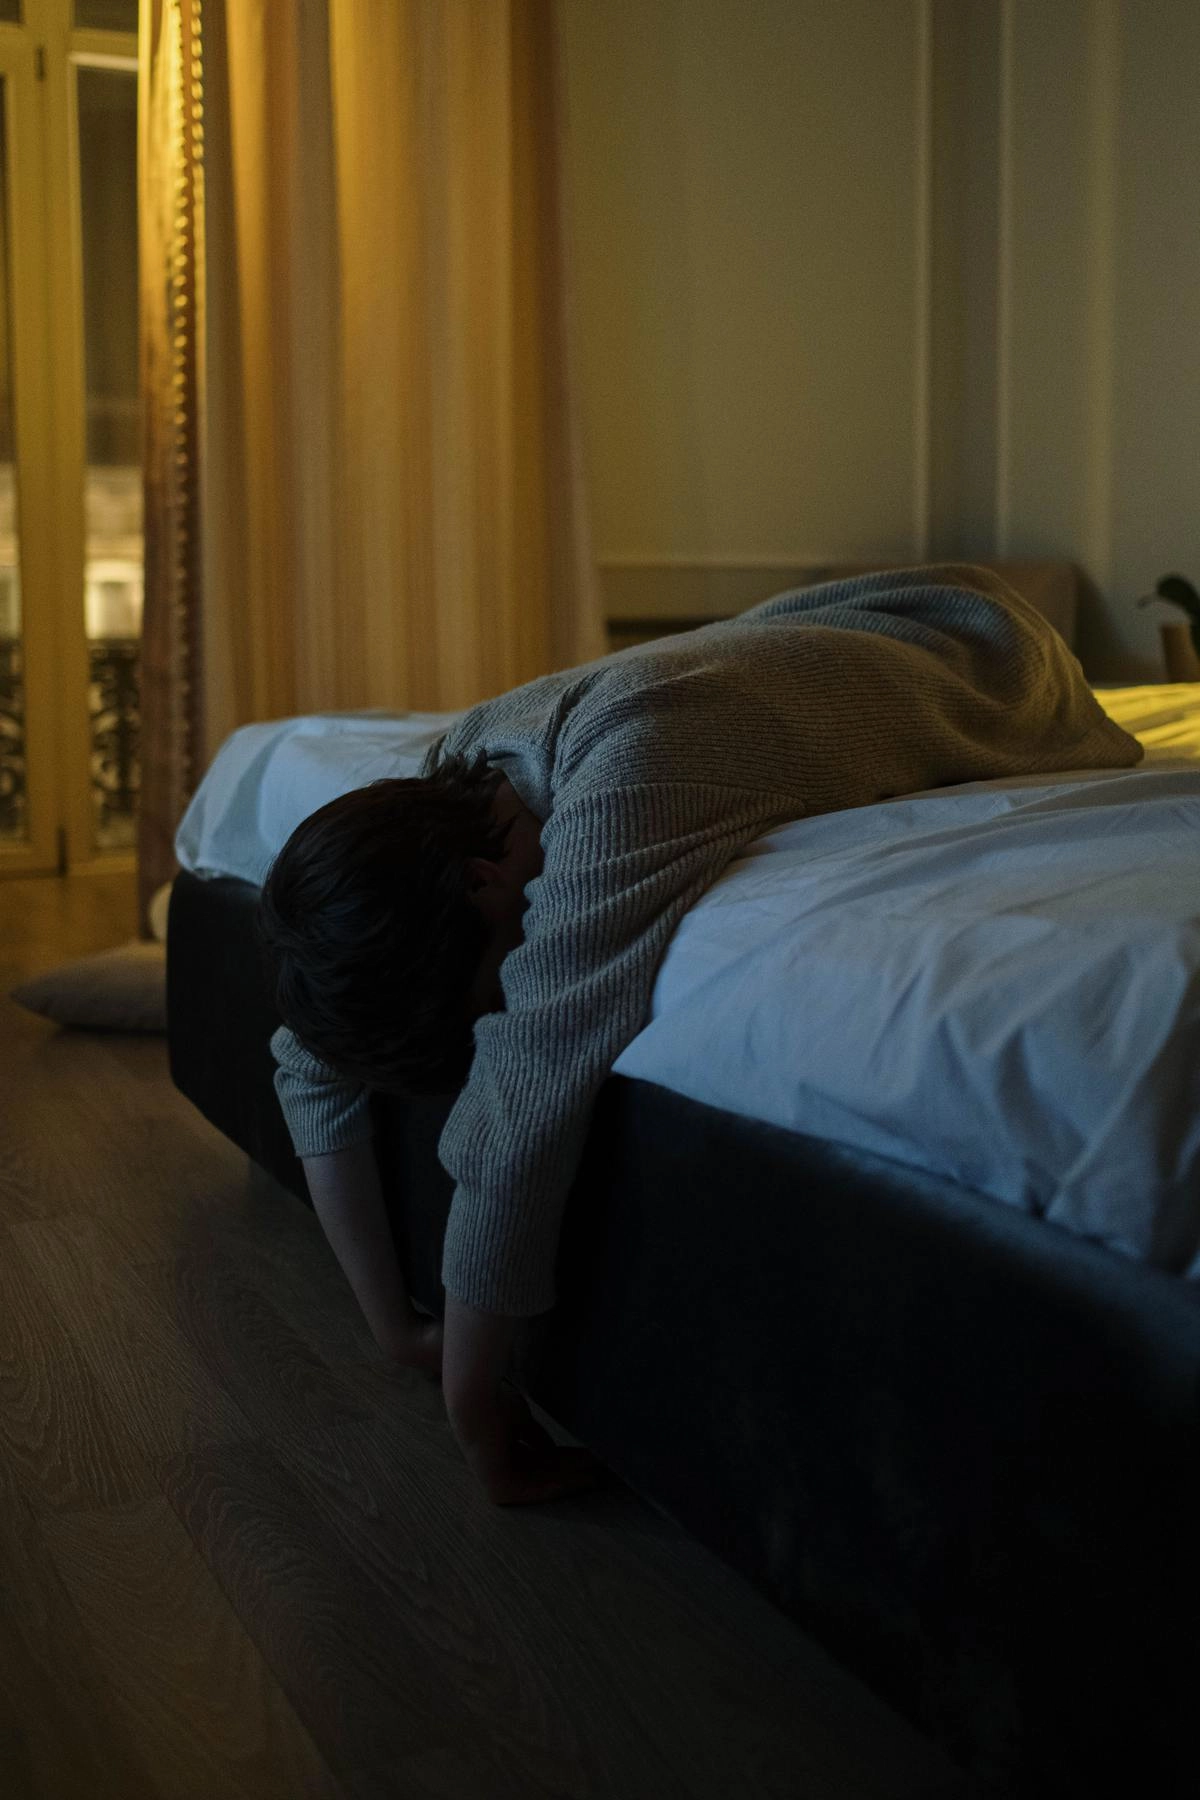 у участников исследования, которым диагностировали нарушения сна, вероятность развития деменции была на 25% выше, чем у тех, кто отлично спал по ночам